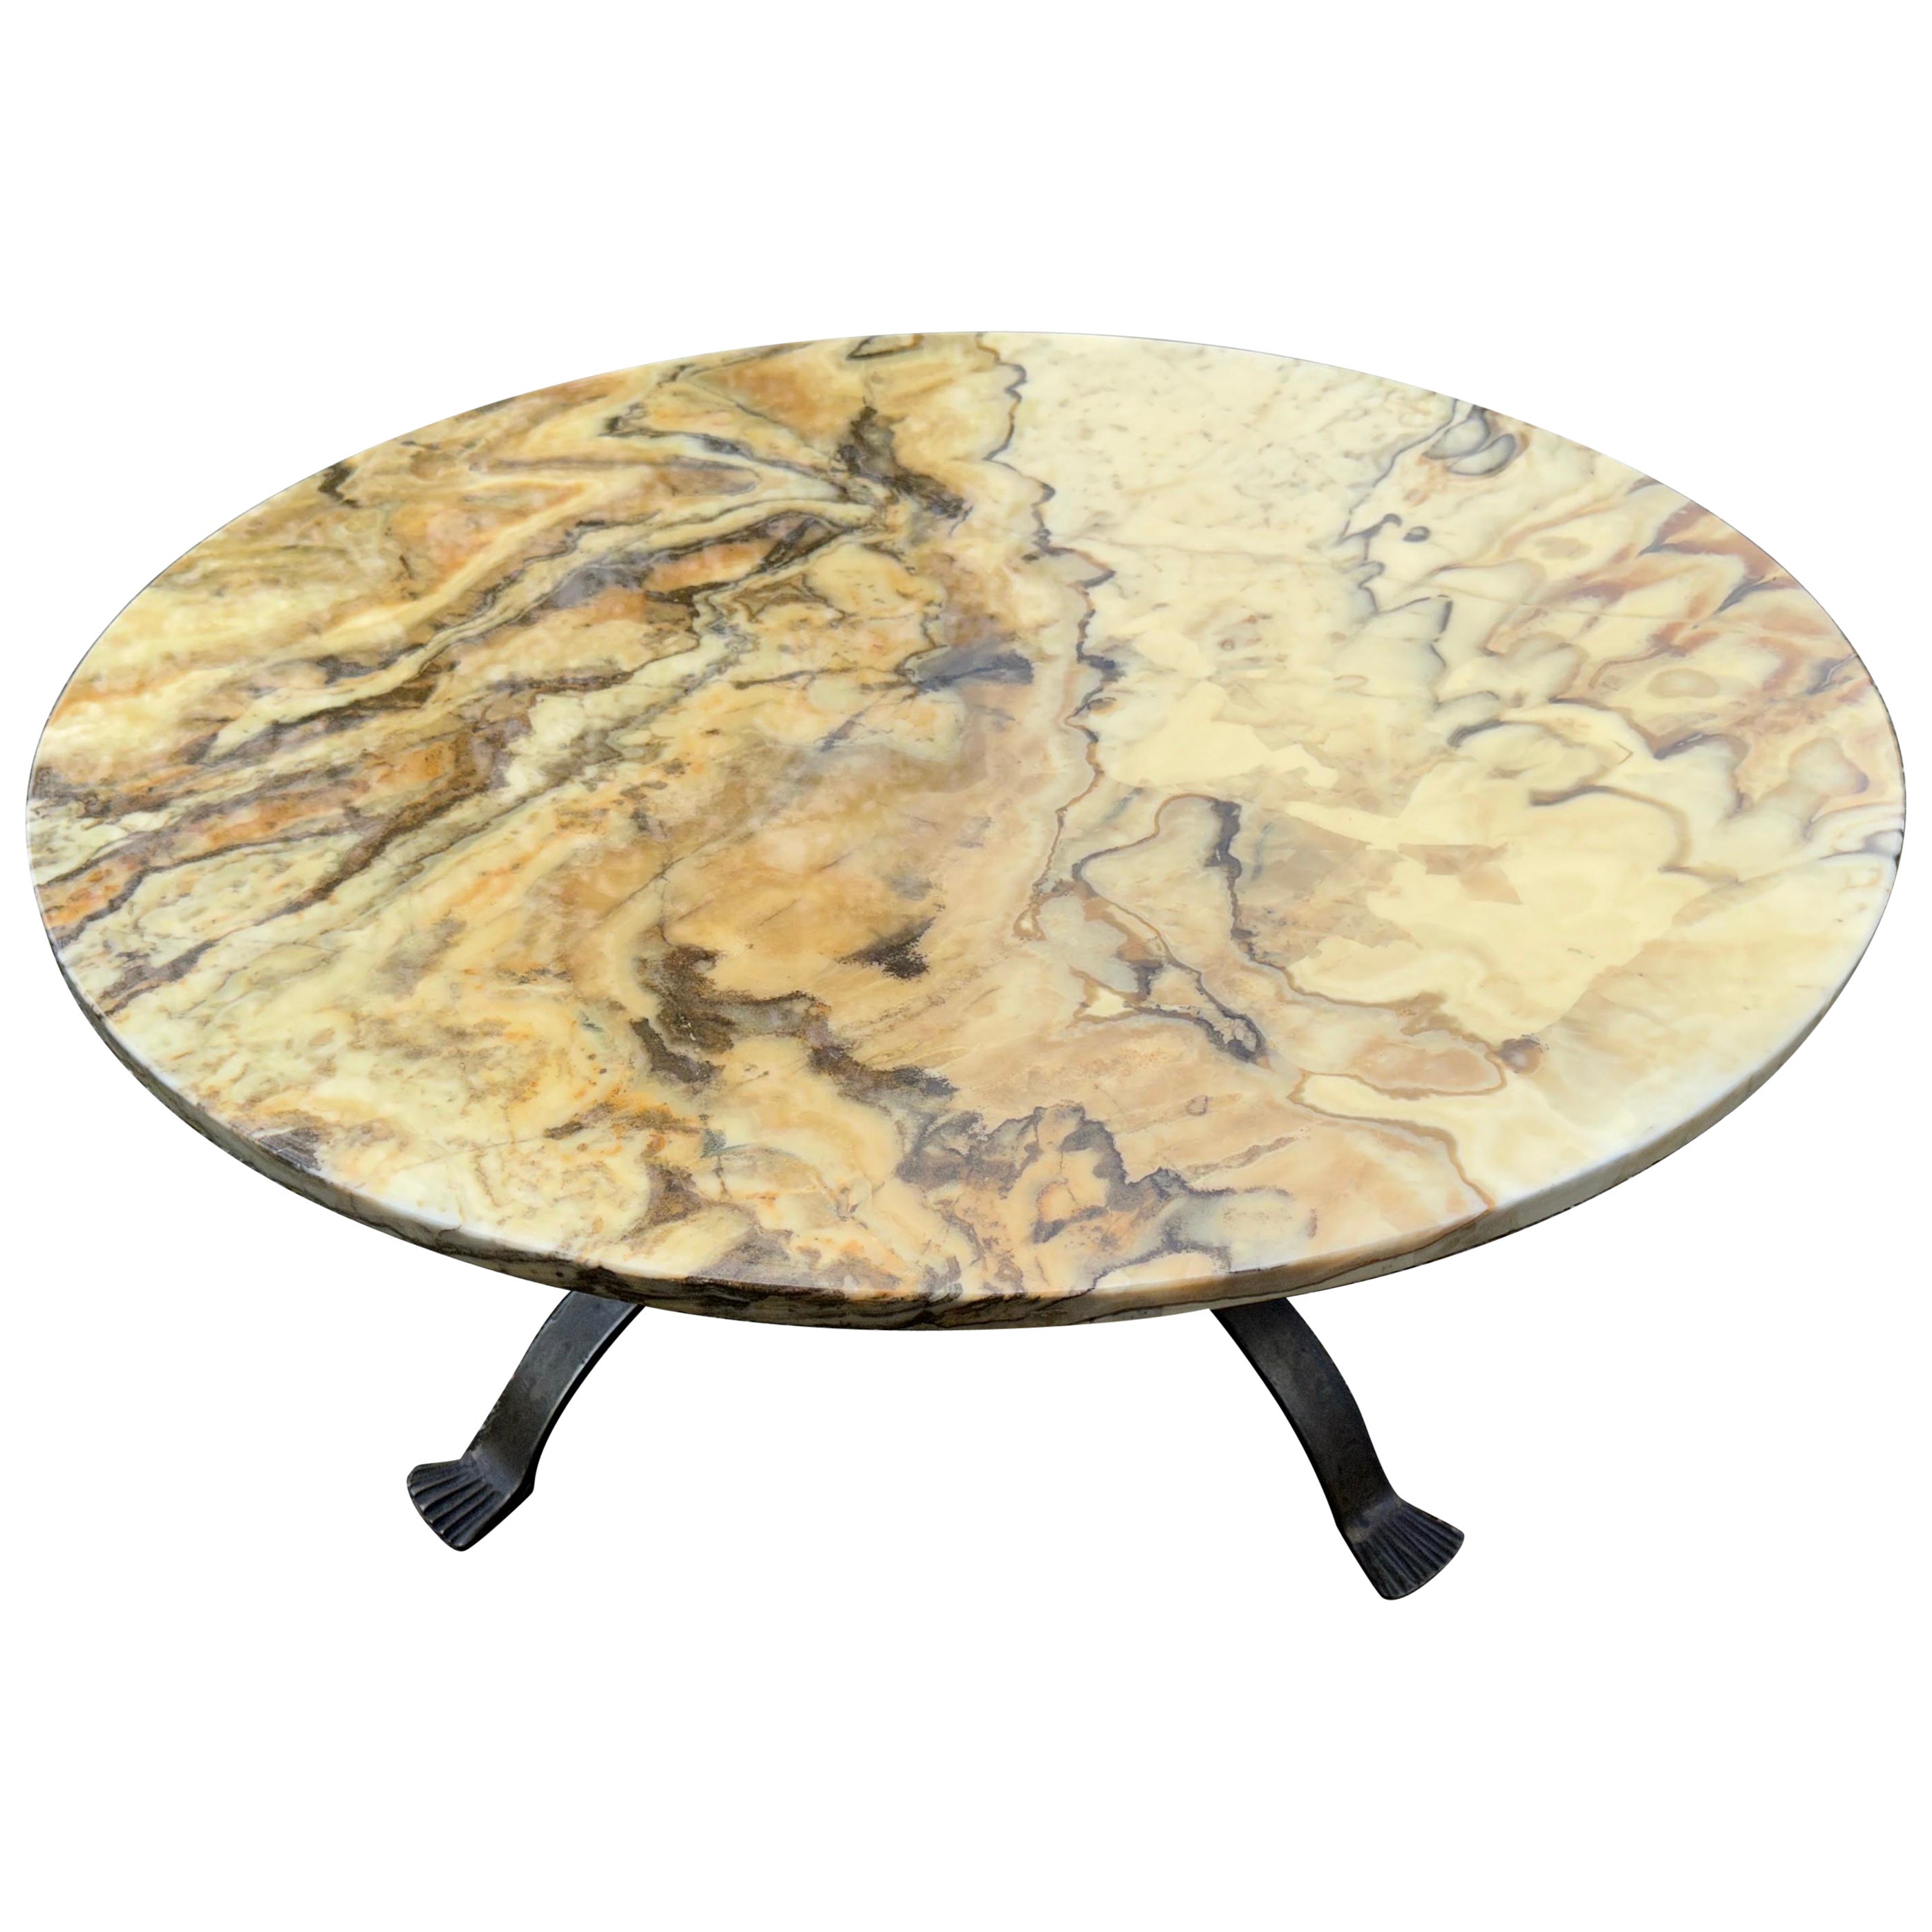 Table basse robuste du milieu du siècle dernier avec un magnifique plateau en marbre et une base en fer forgé